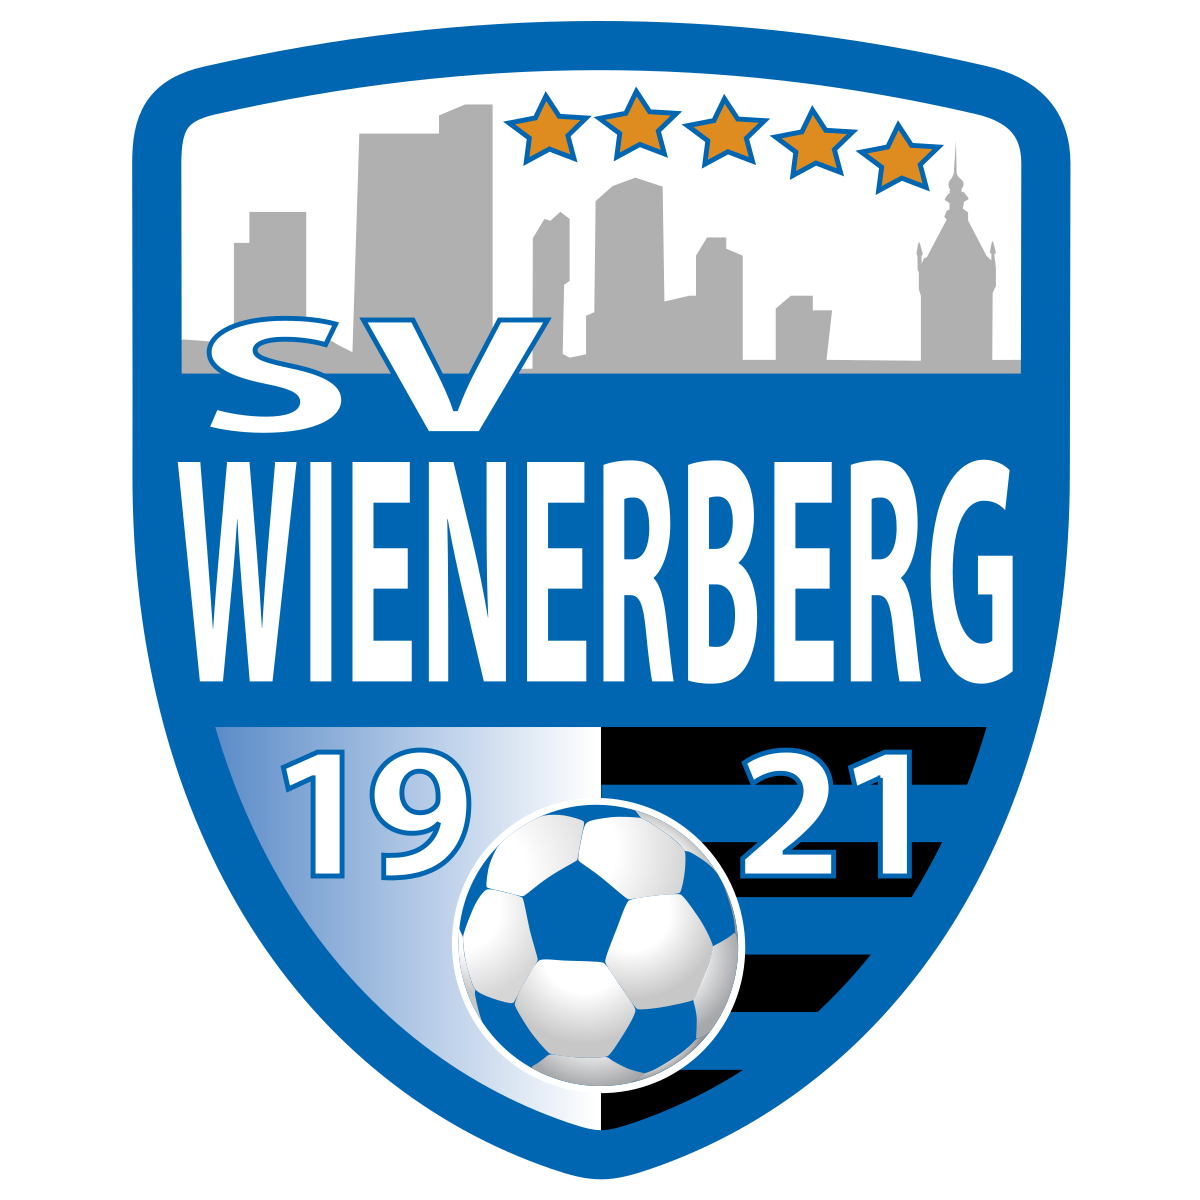 Wienerberg logo